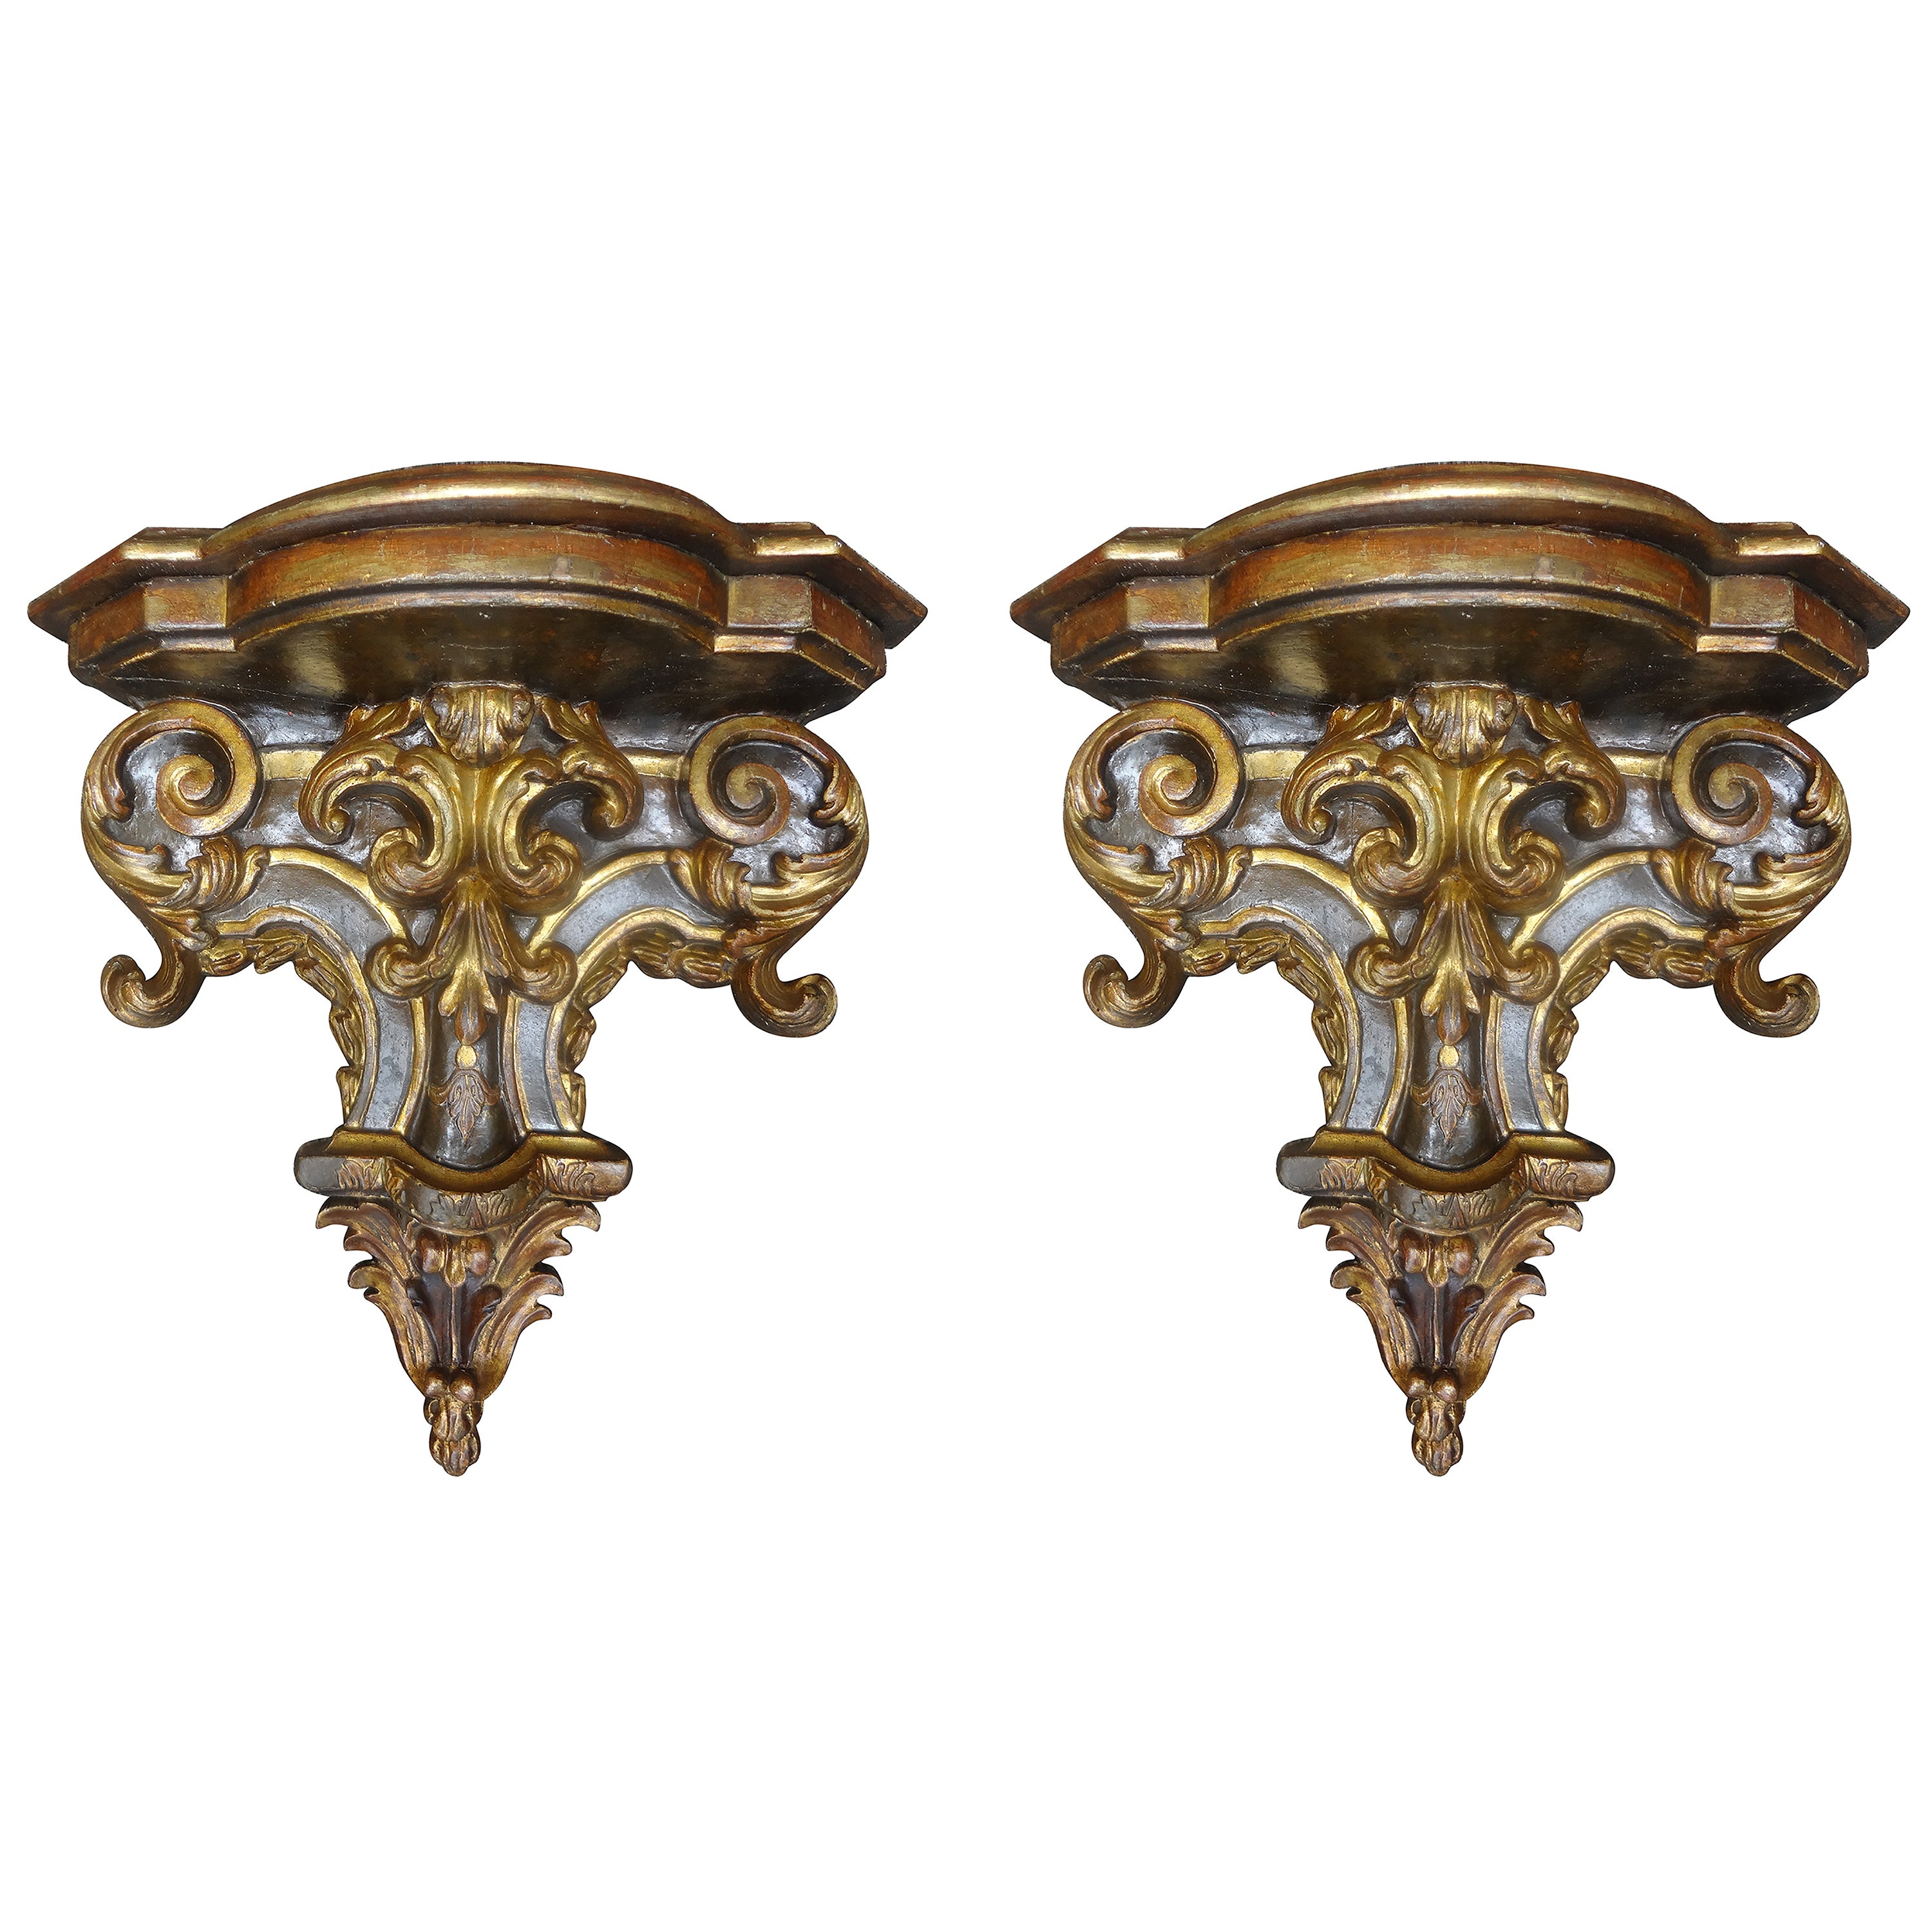 Paire de supports muraux italiens en bois peint et doré du 19ème siècle